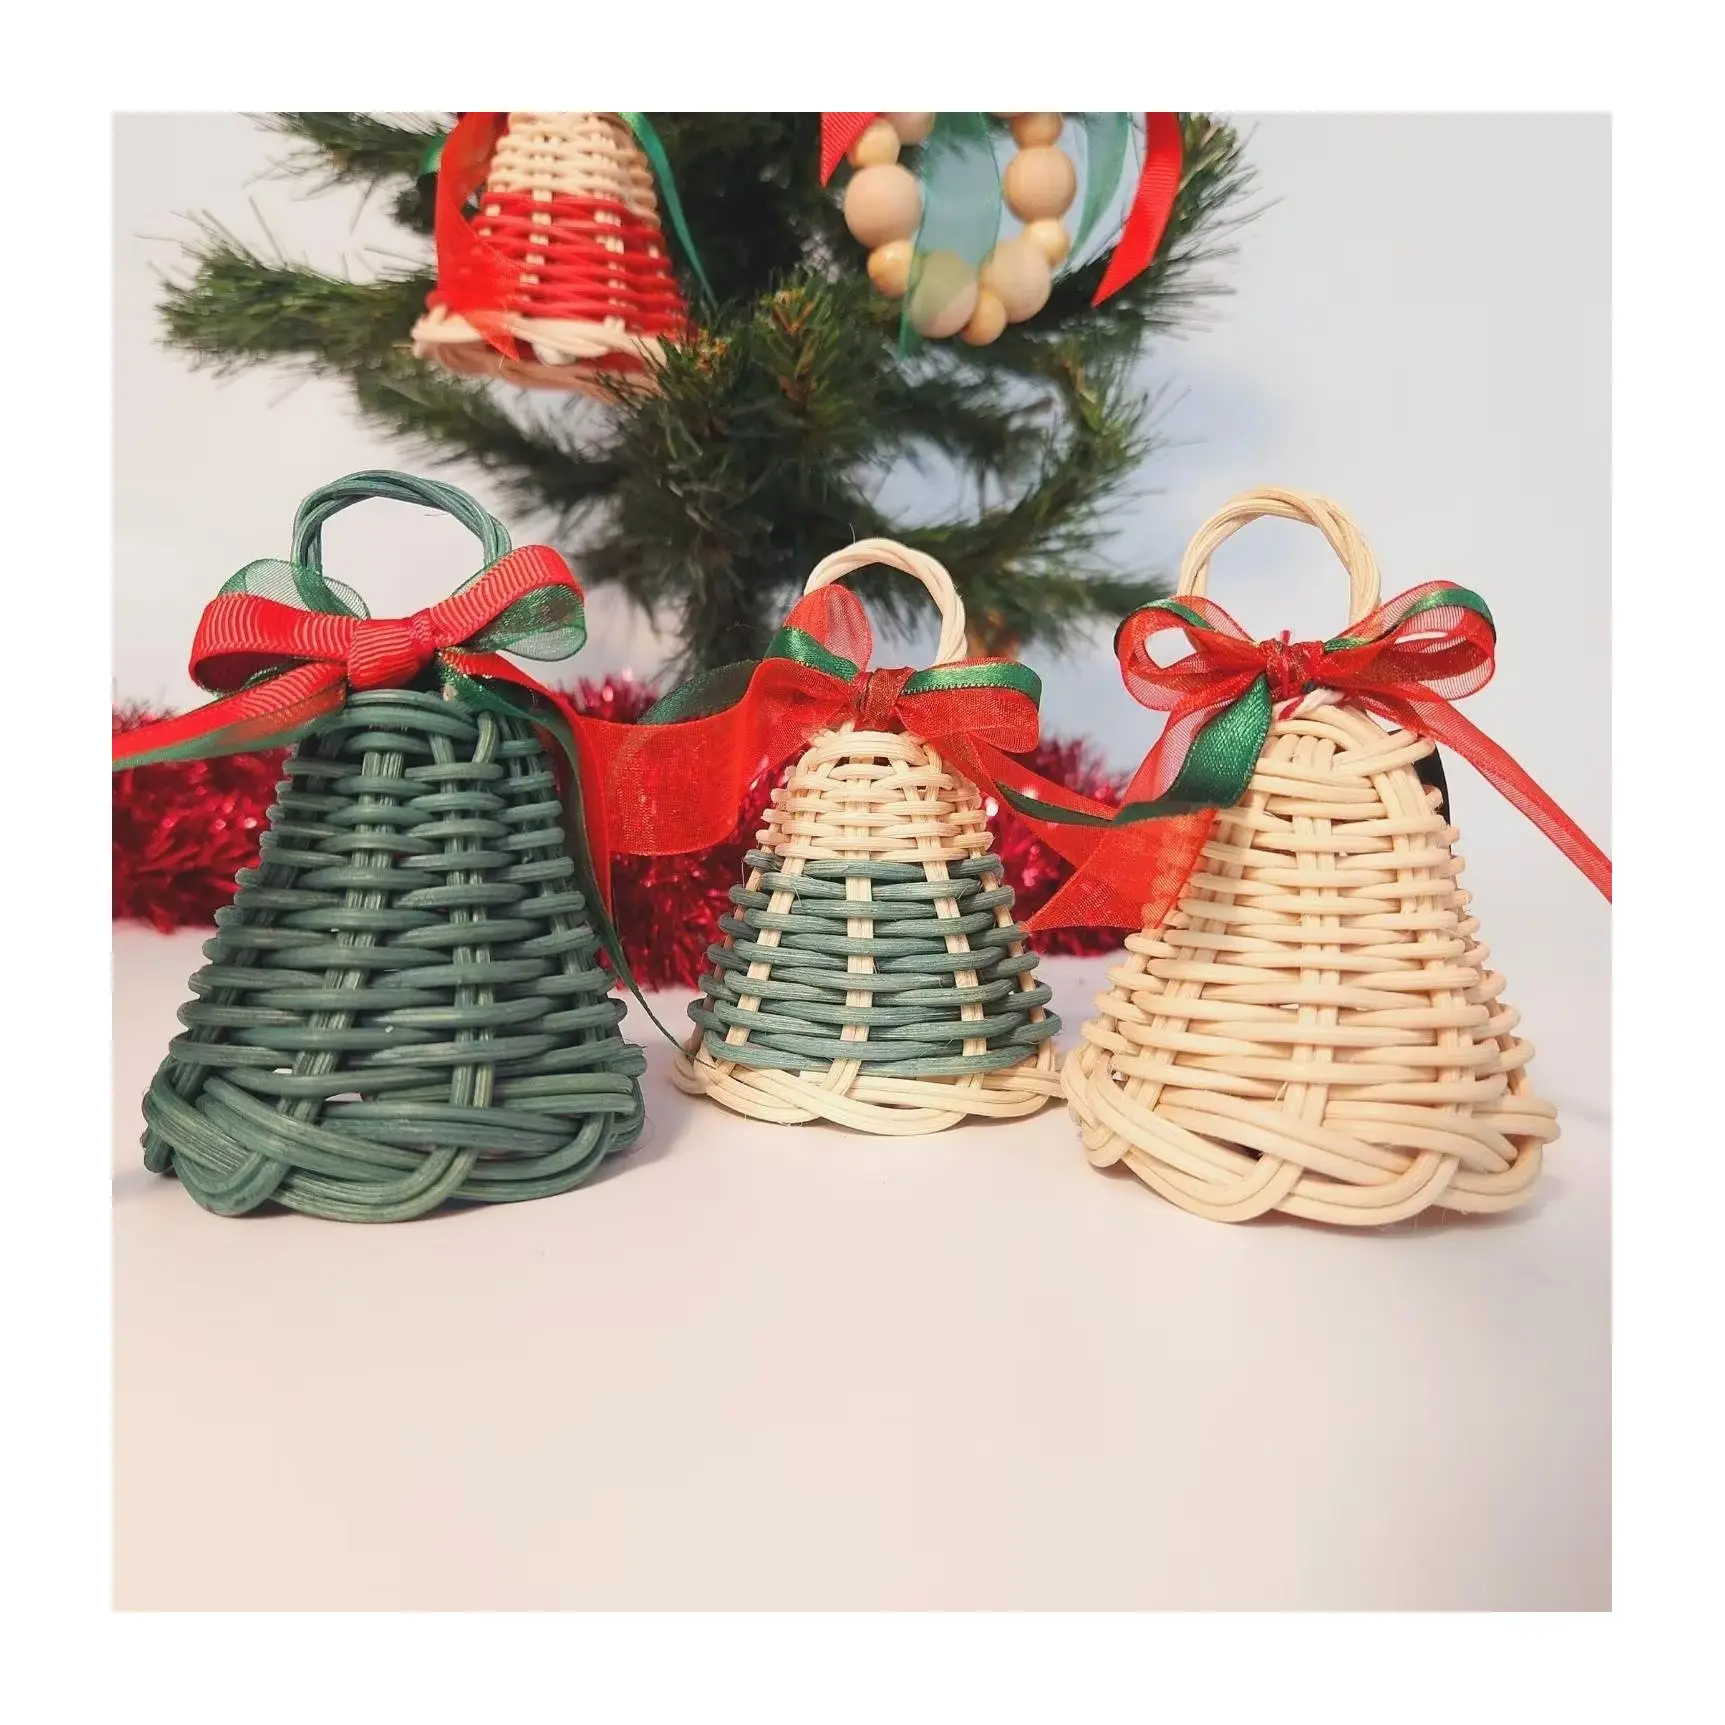 أجراس عيد الميلاد المعلق بألوان مختلفة مصنوعة يدويًا من الراتان, جرس عطلة الكريسماس ، زينة رخيصة السعر